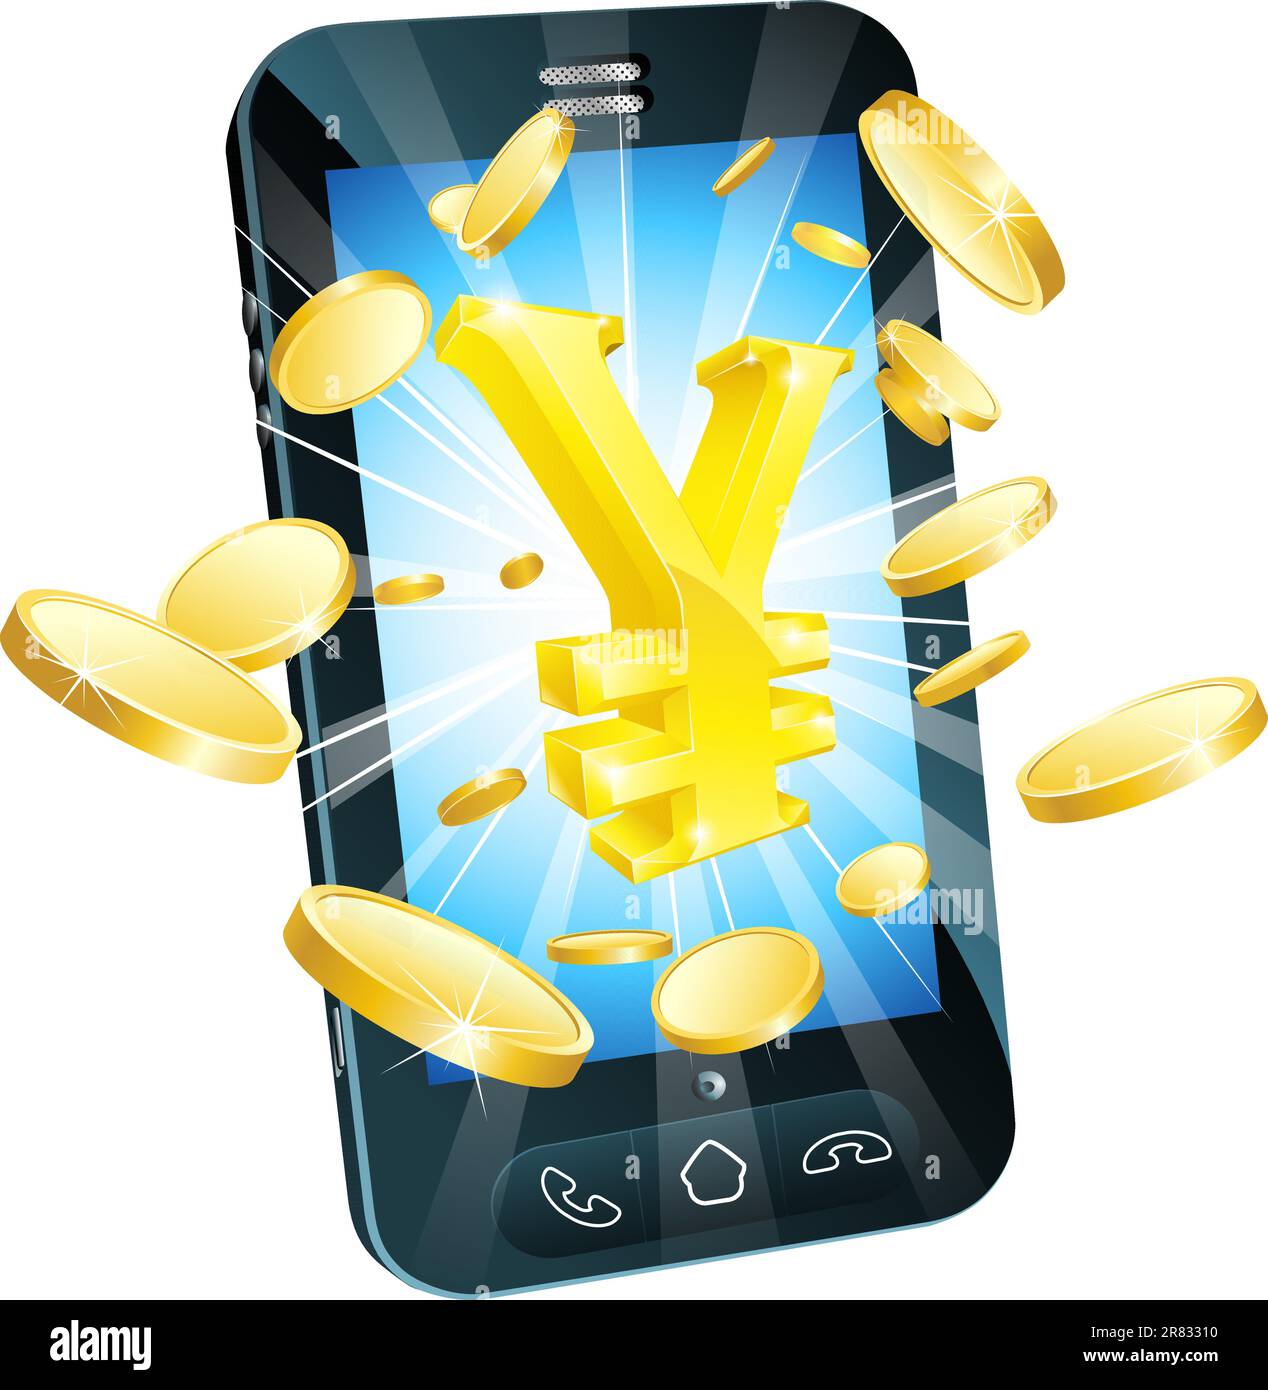 Yen de l'argent téléphone concept illustration de mobile cell phone avec de l'or et des pièces en euros yen sign Illustration de Vecteur